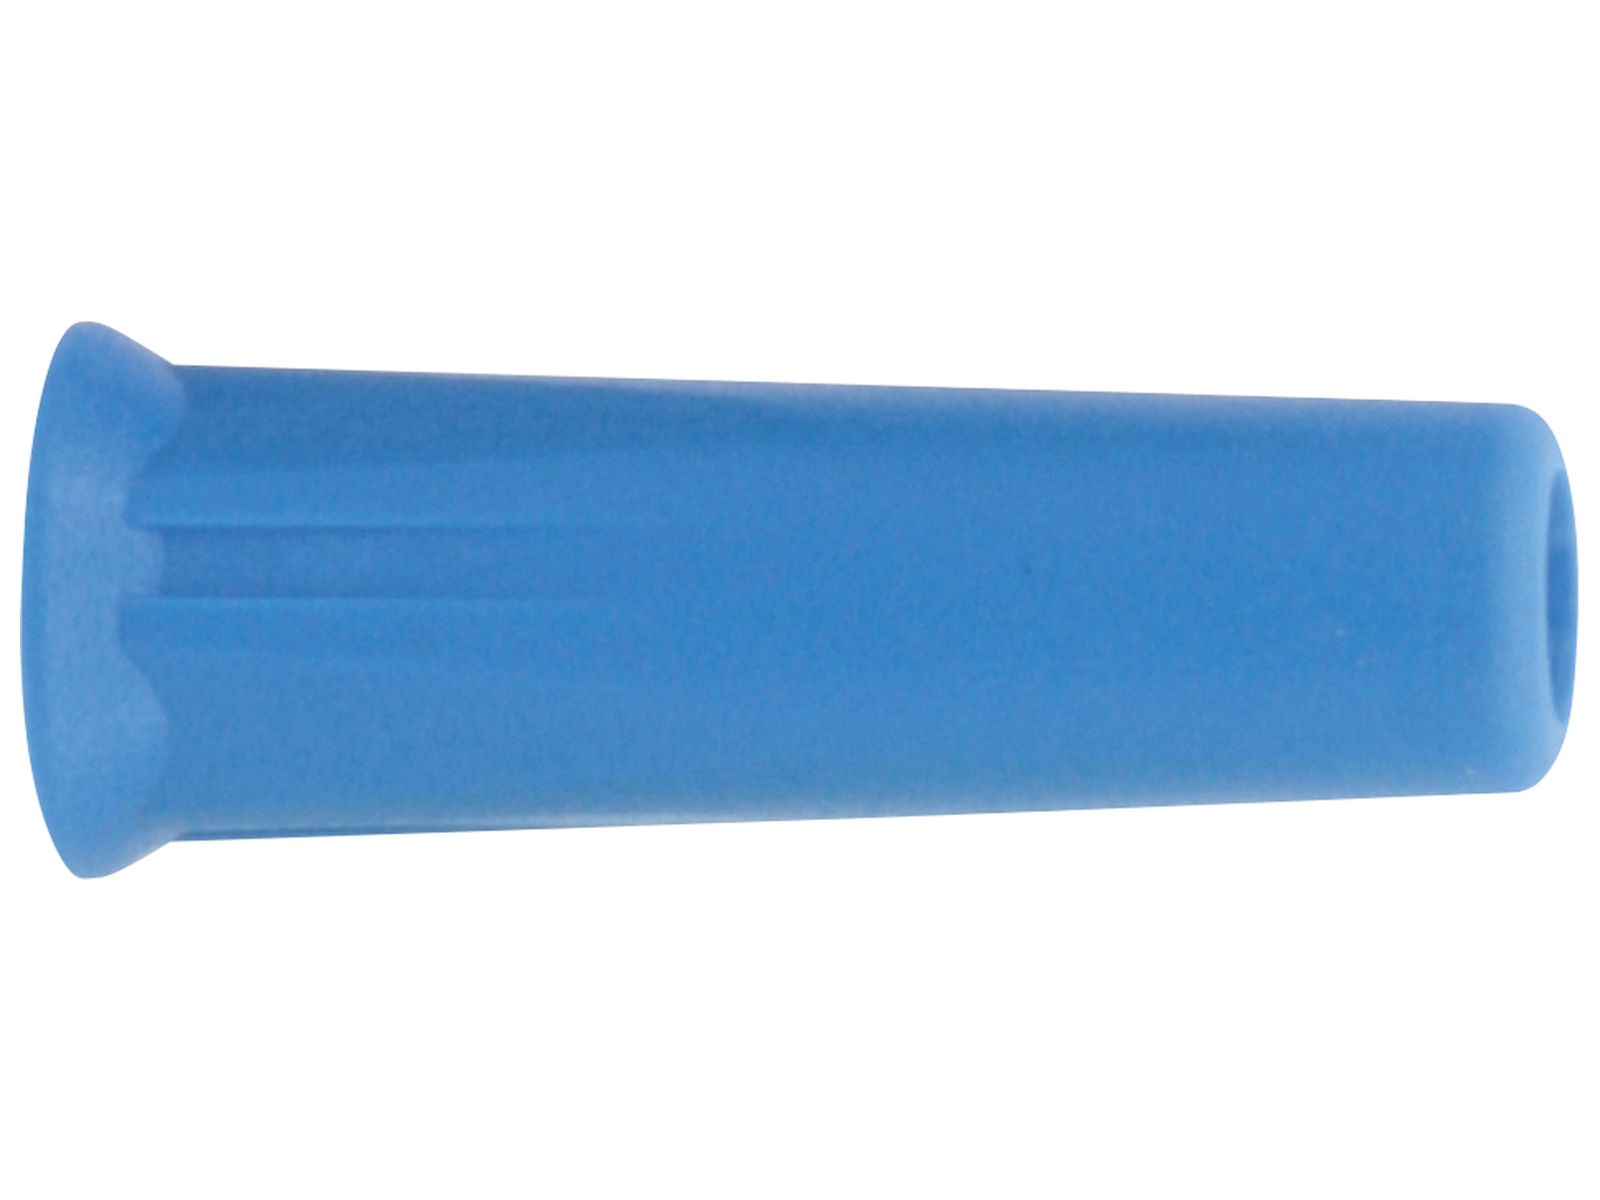 DONAU ELEKTRONIK Bananenkupplung, 4mm, blau, 3012 von Donau Elektronik